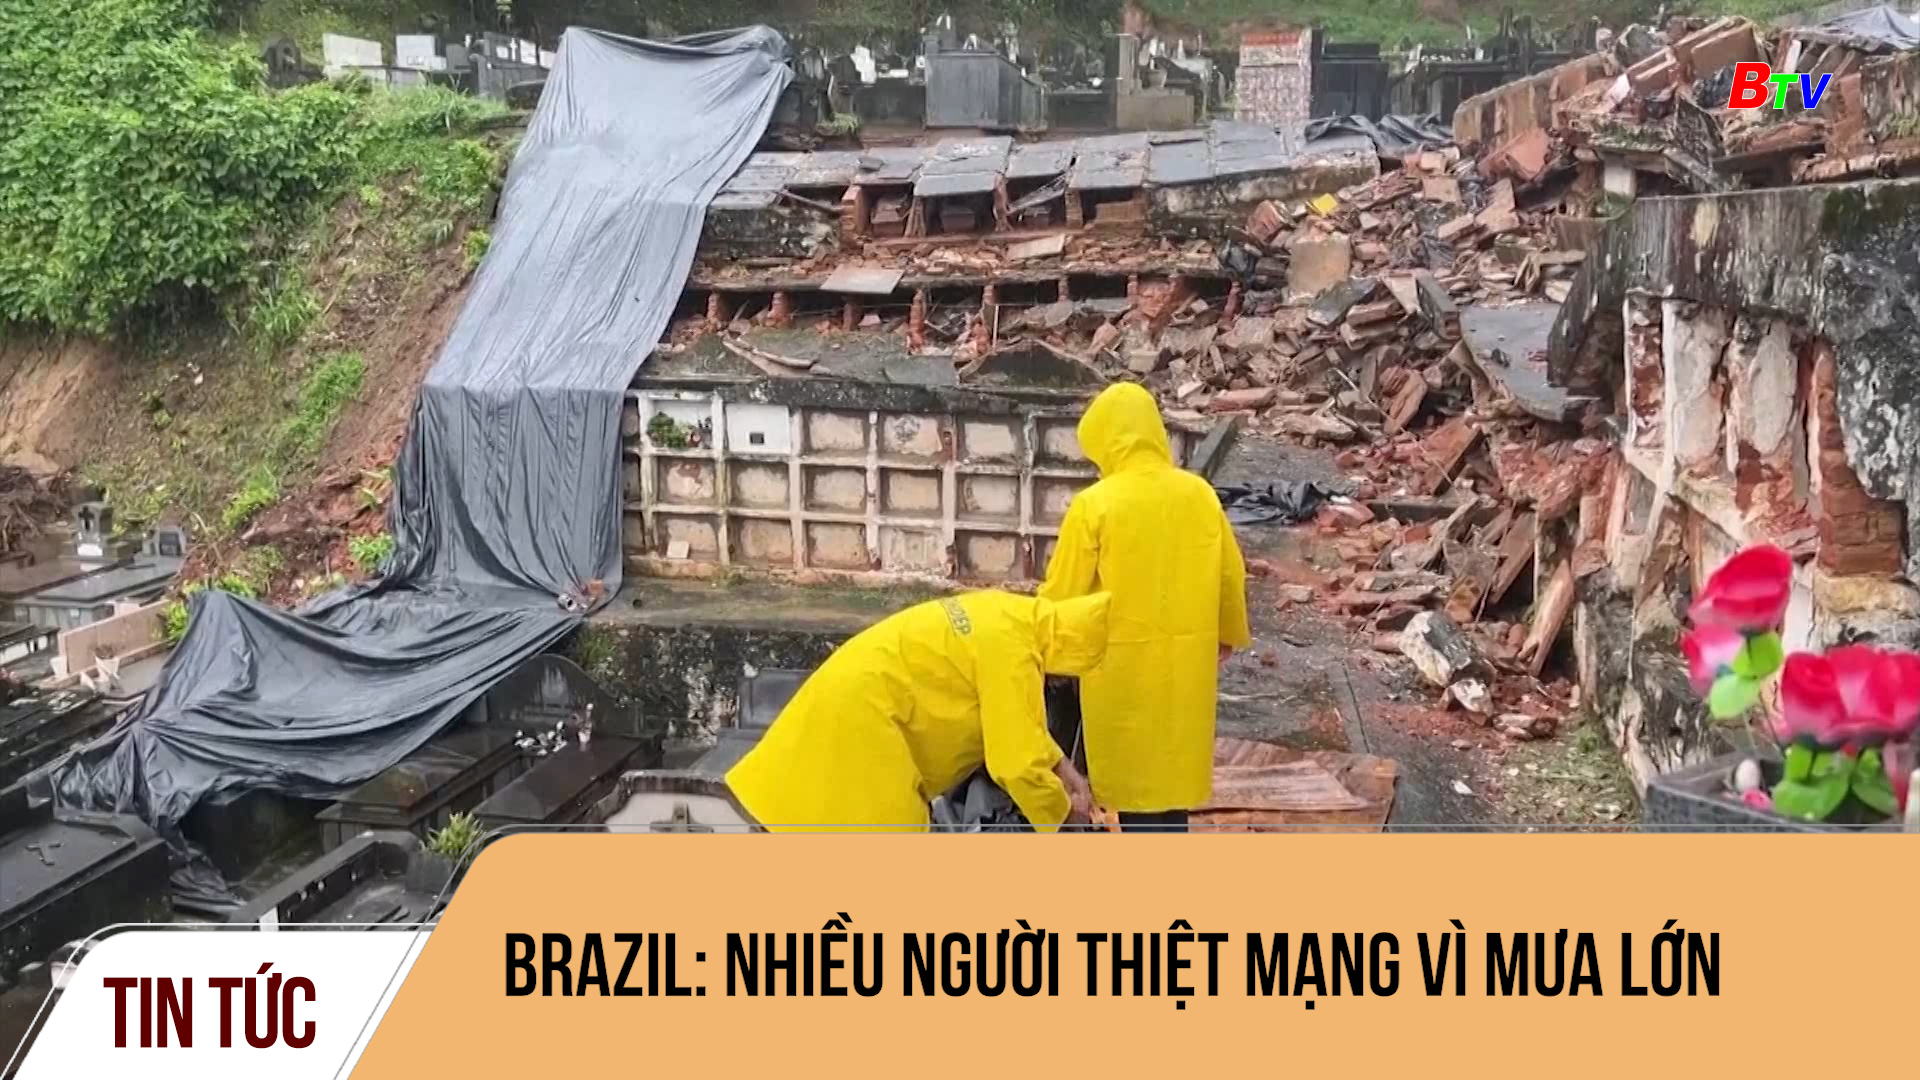 Brazil: nhiều người thiệt mạng vì mưa lớn